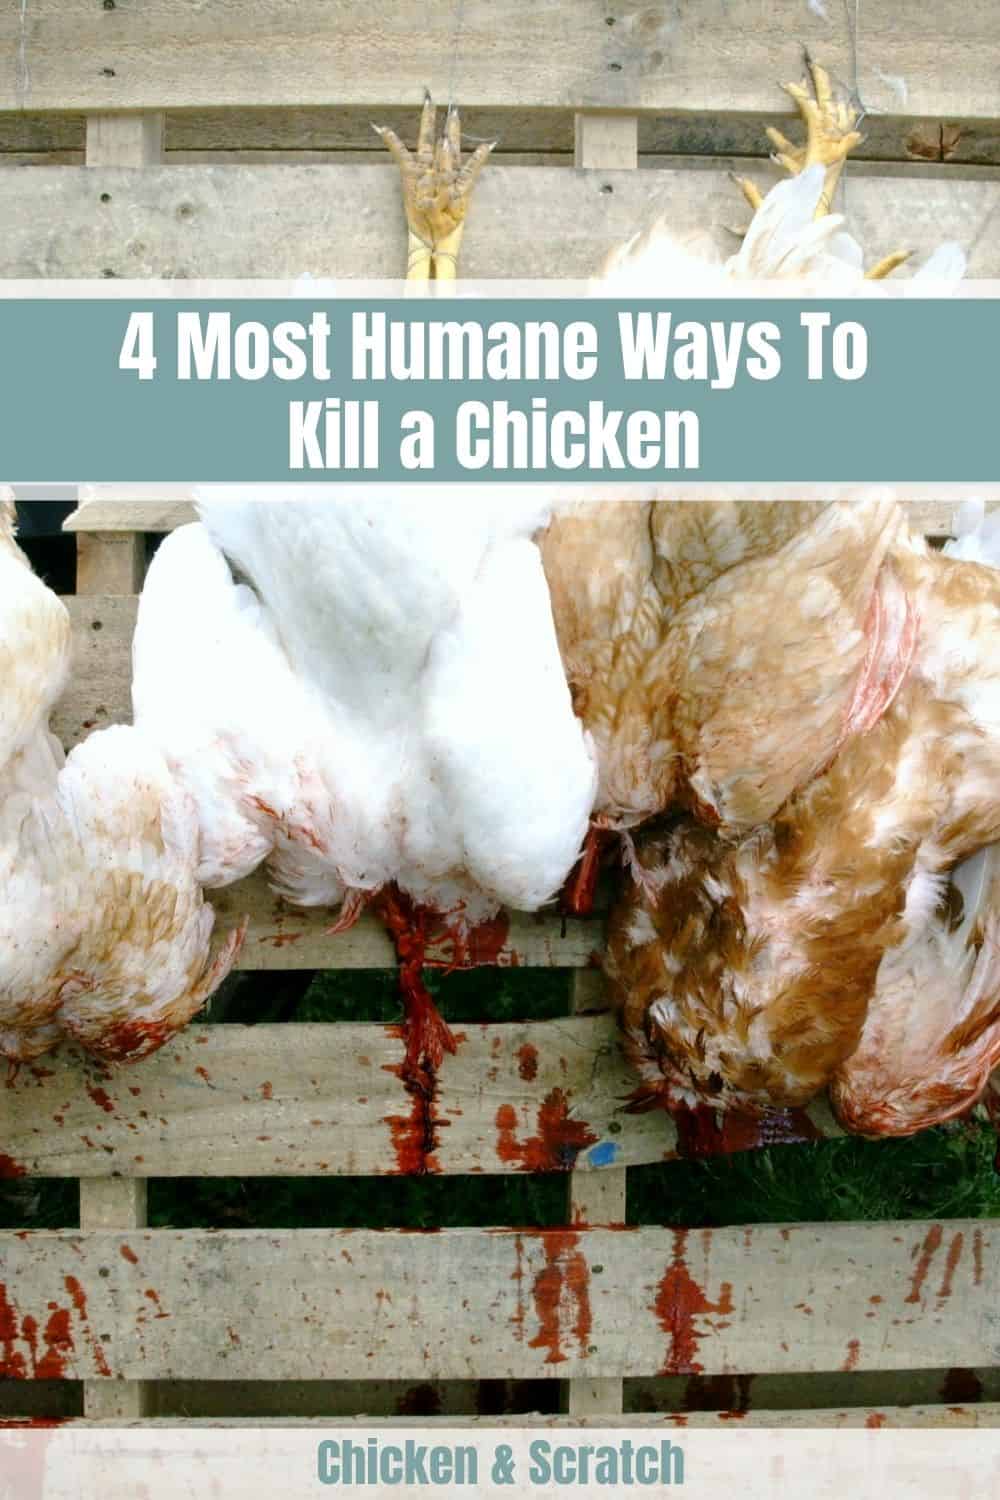 4 maneiras mais humanas de matar uma galinha (guia passo a passo)